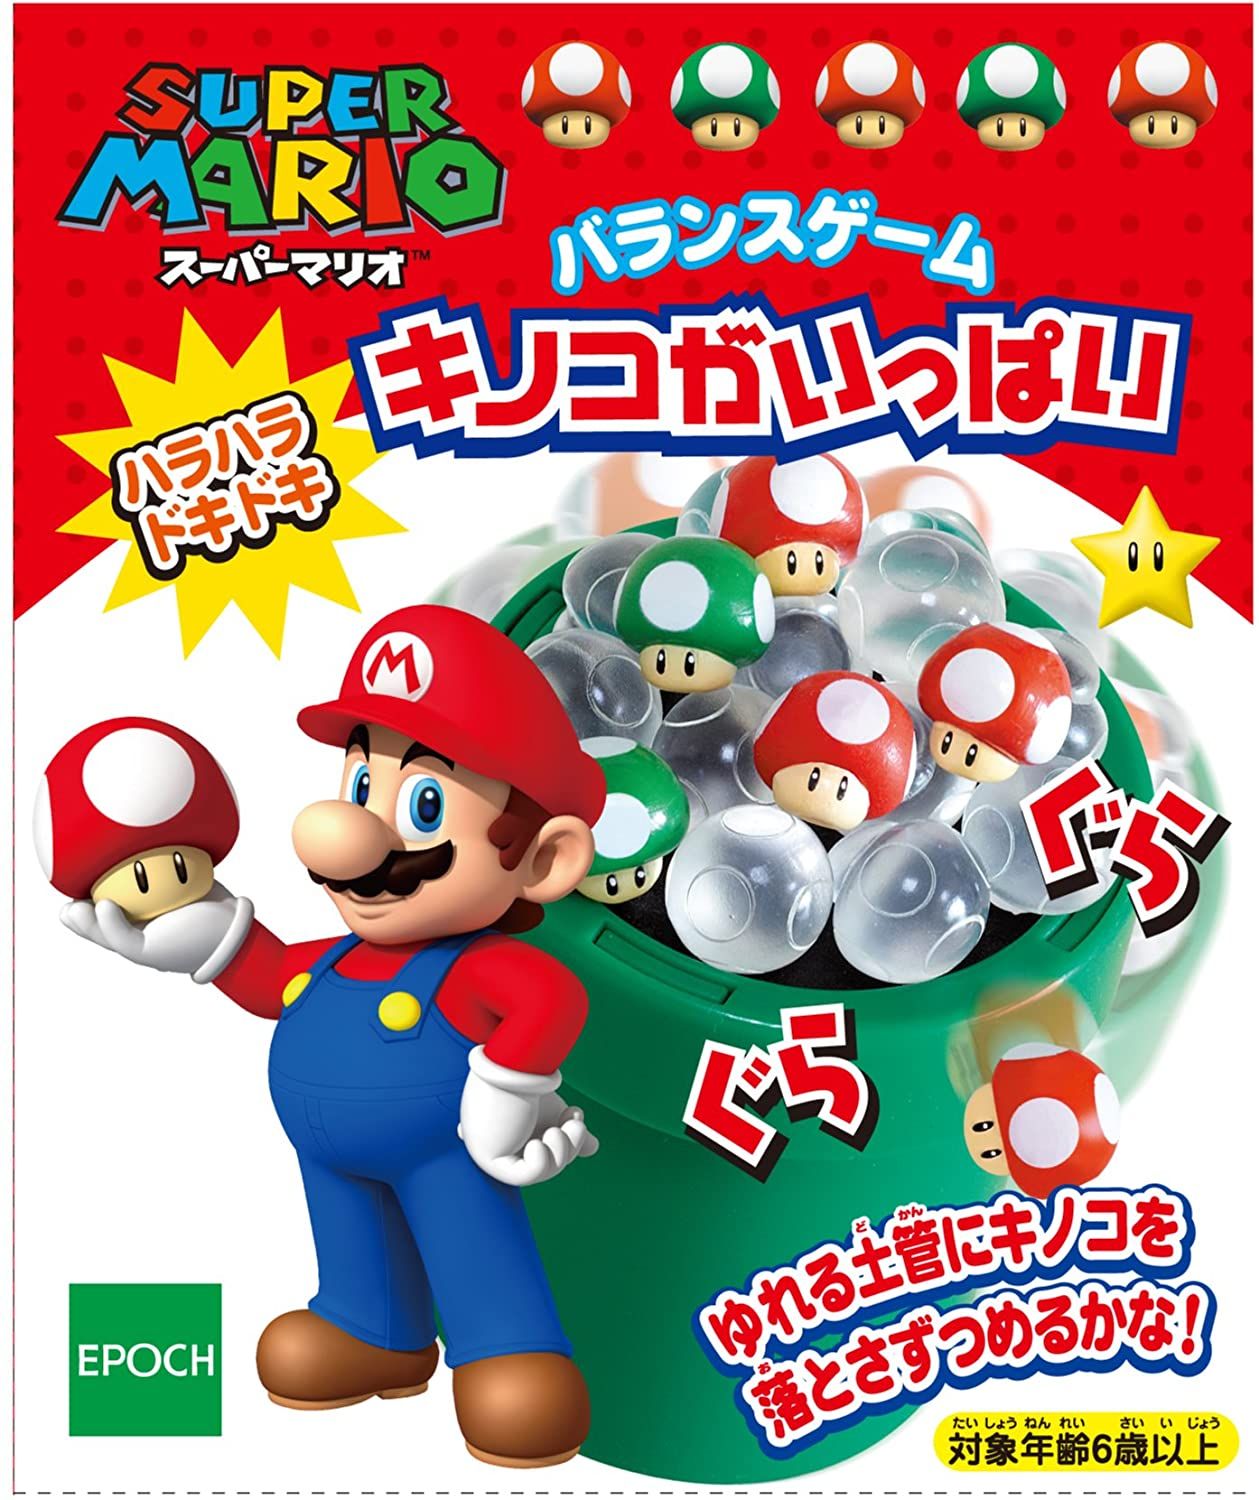 スーパーマリオ バランスゲーム キノコがいっぱい (Super Mario Balance Game: A Lot of Mushrooms)